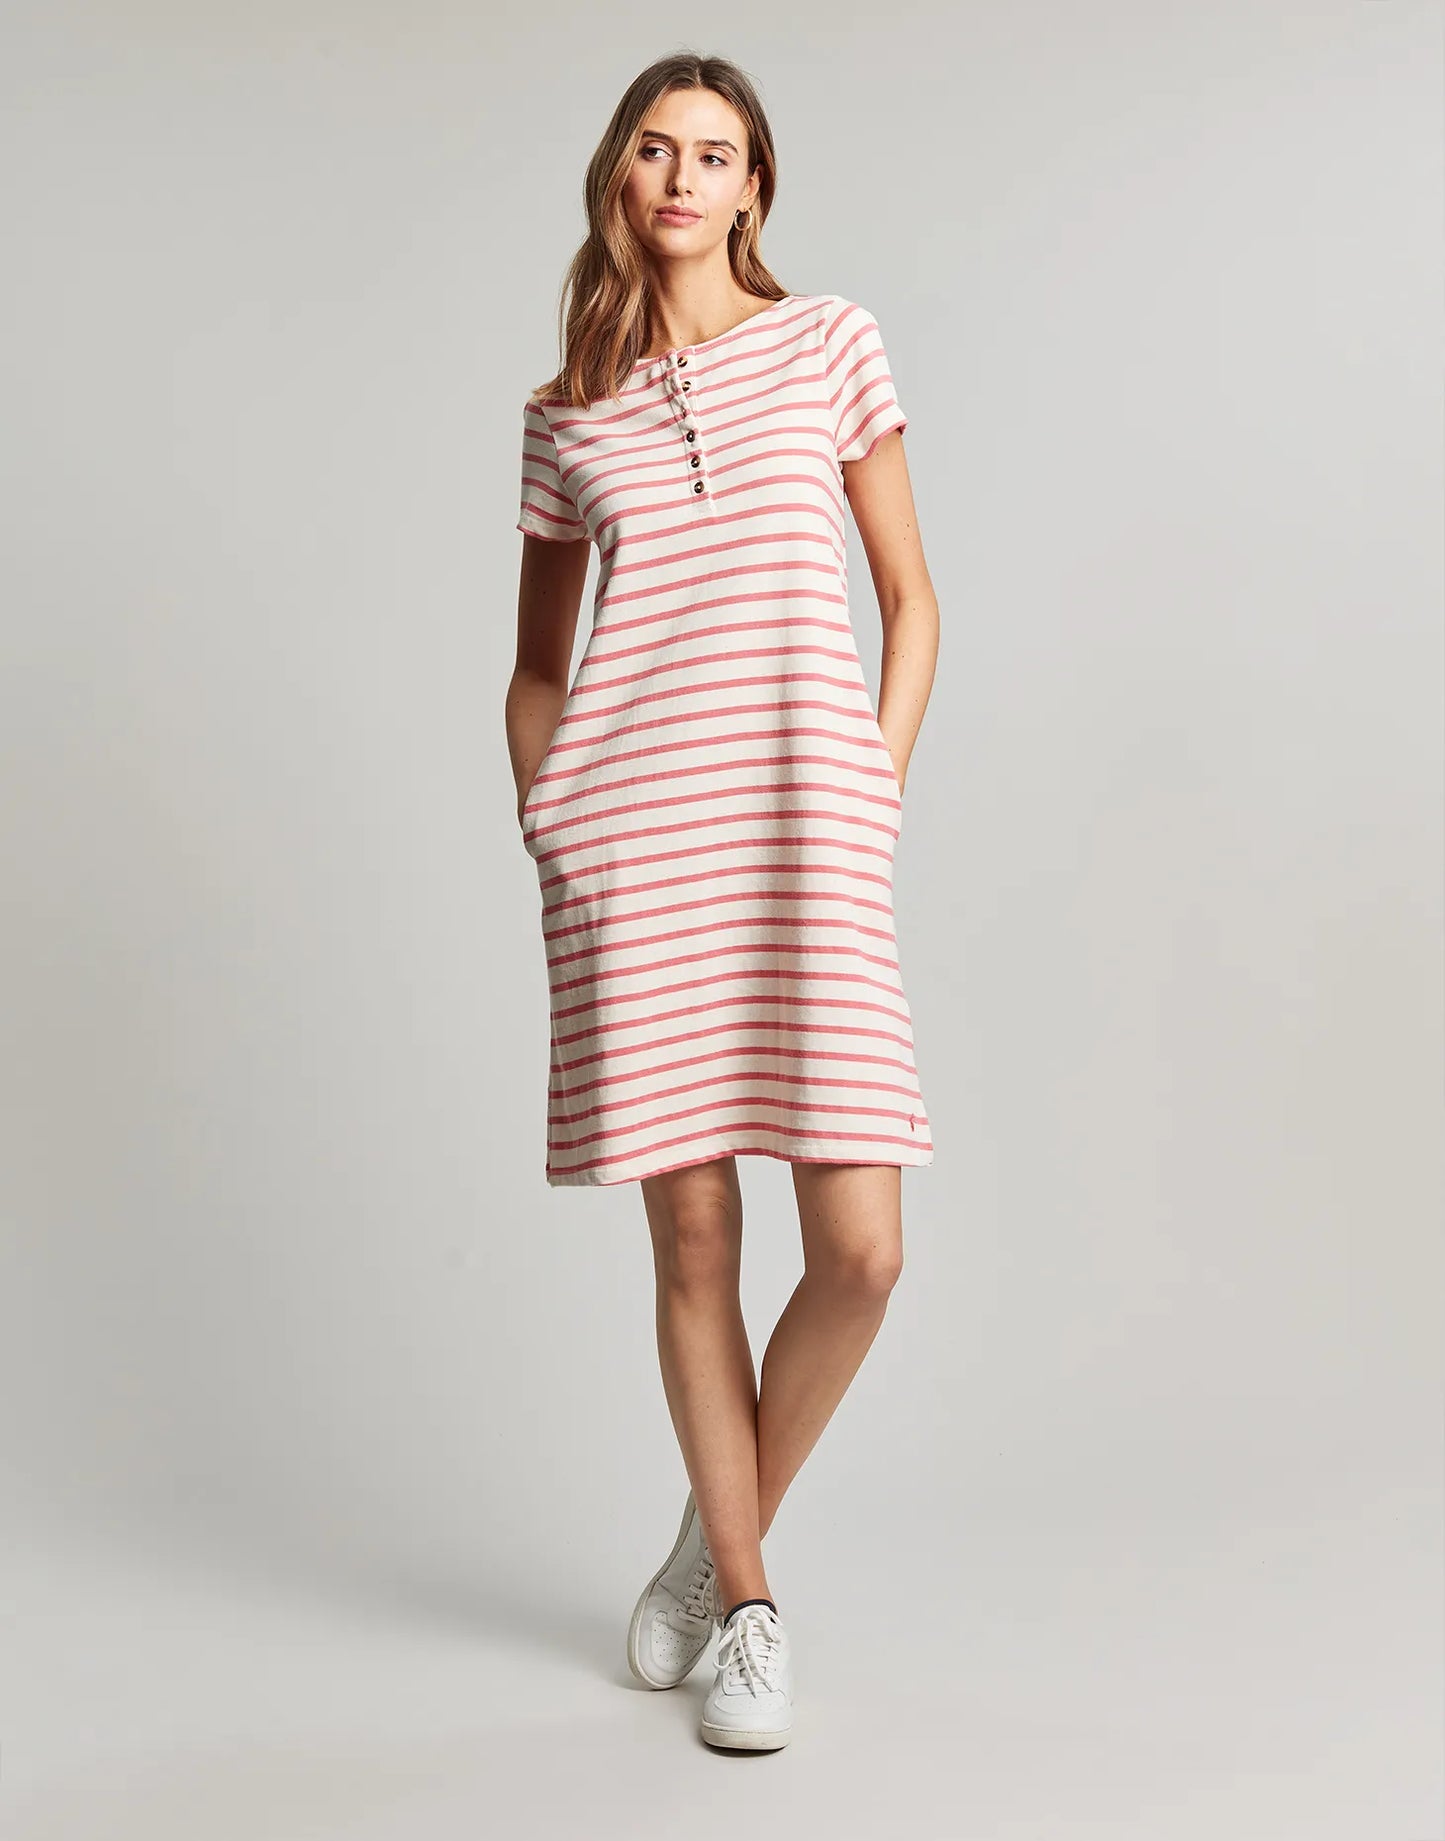 Kea Henley Dress - Coral Stripe